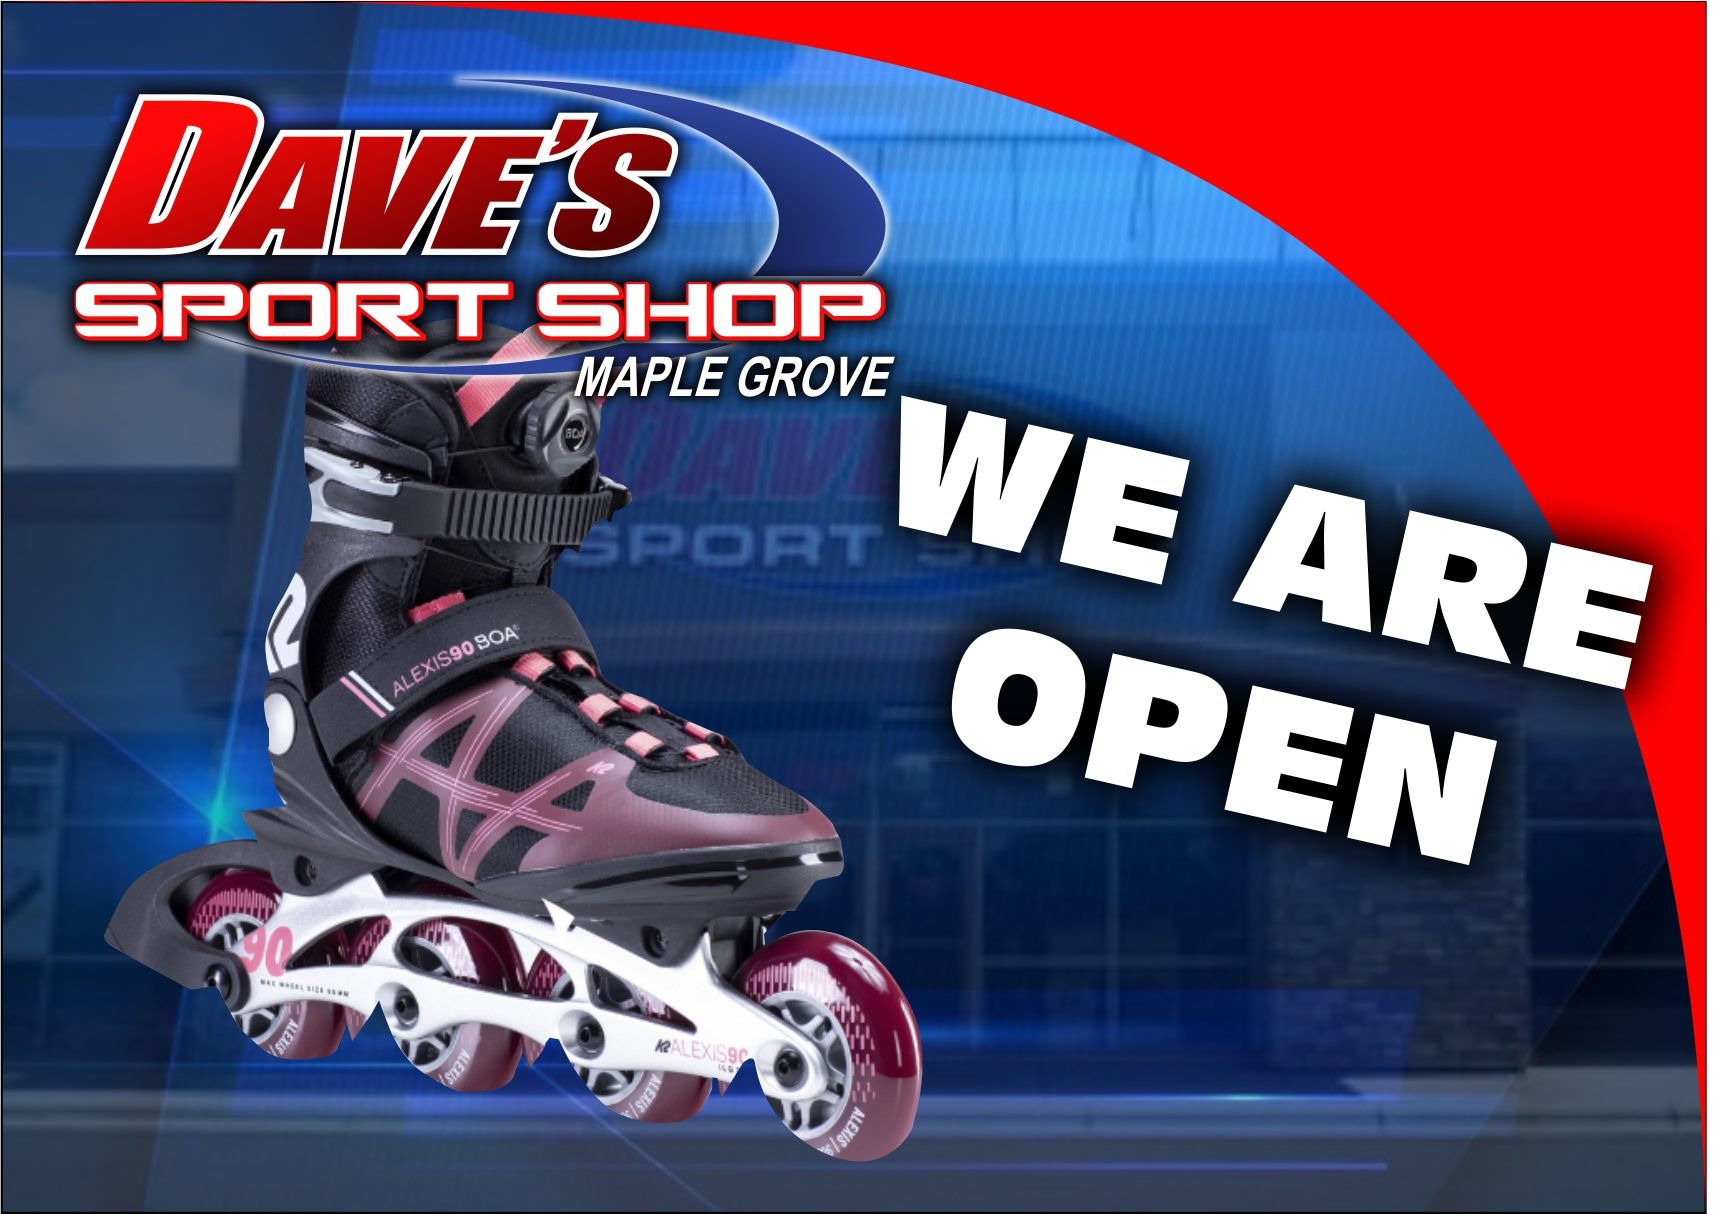 Dave's Sport Shop Inc